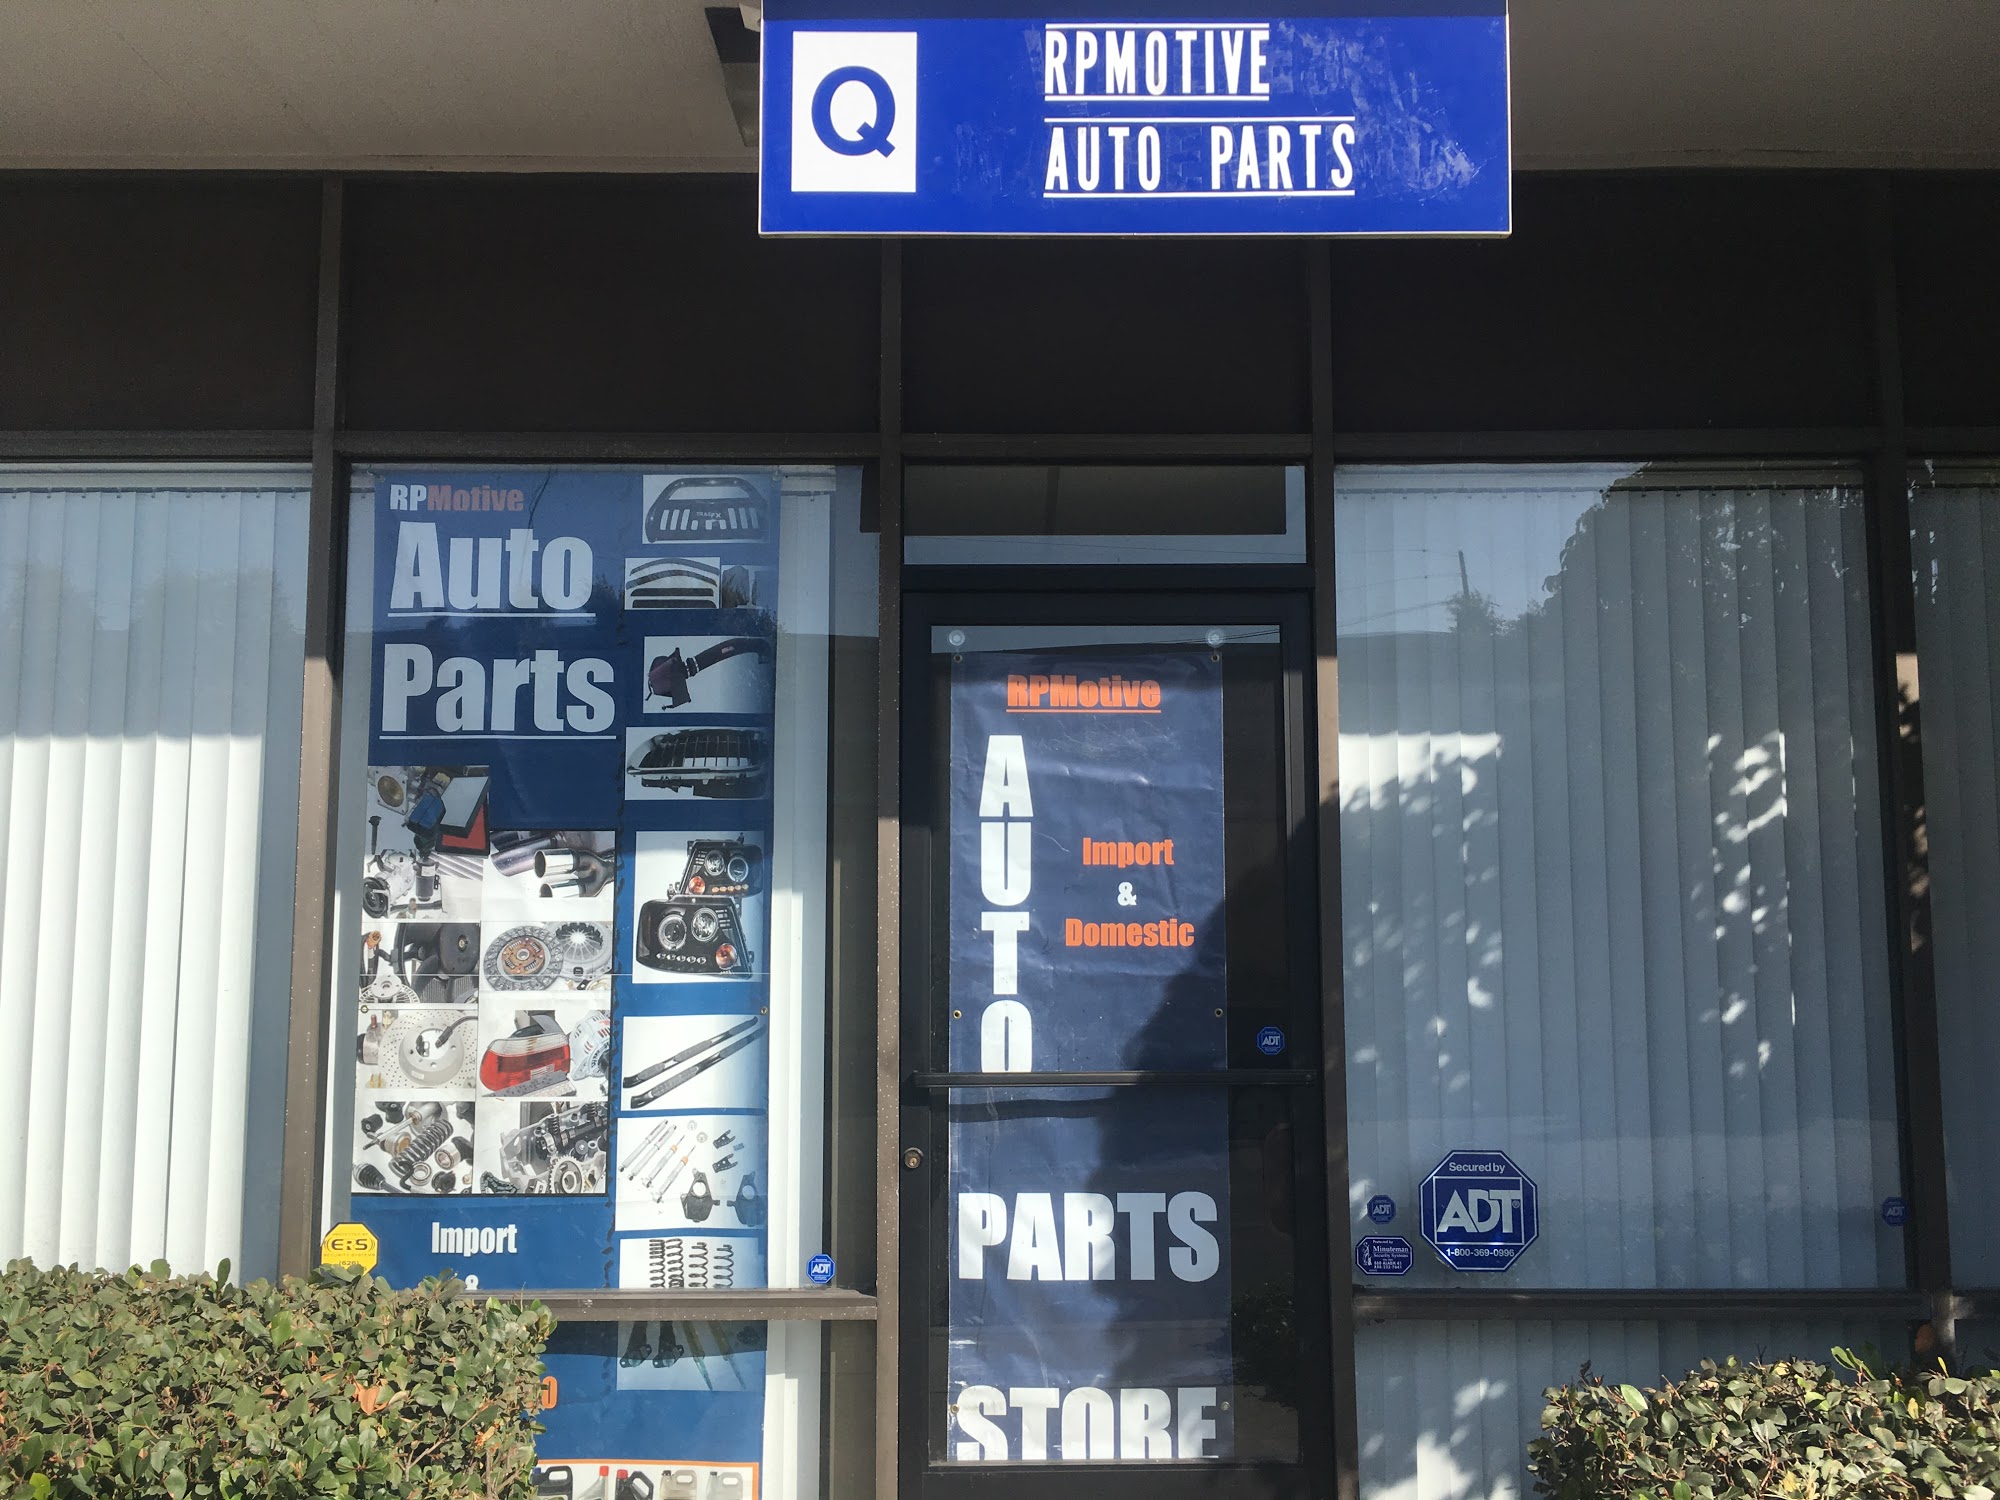 RPMotive Automotive Parts